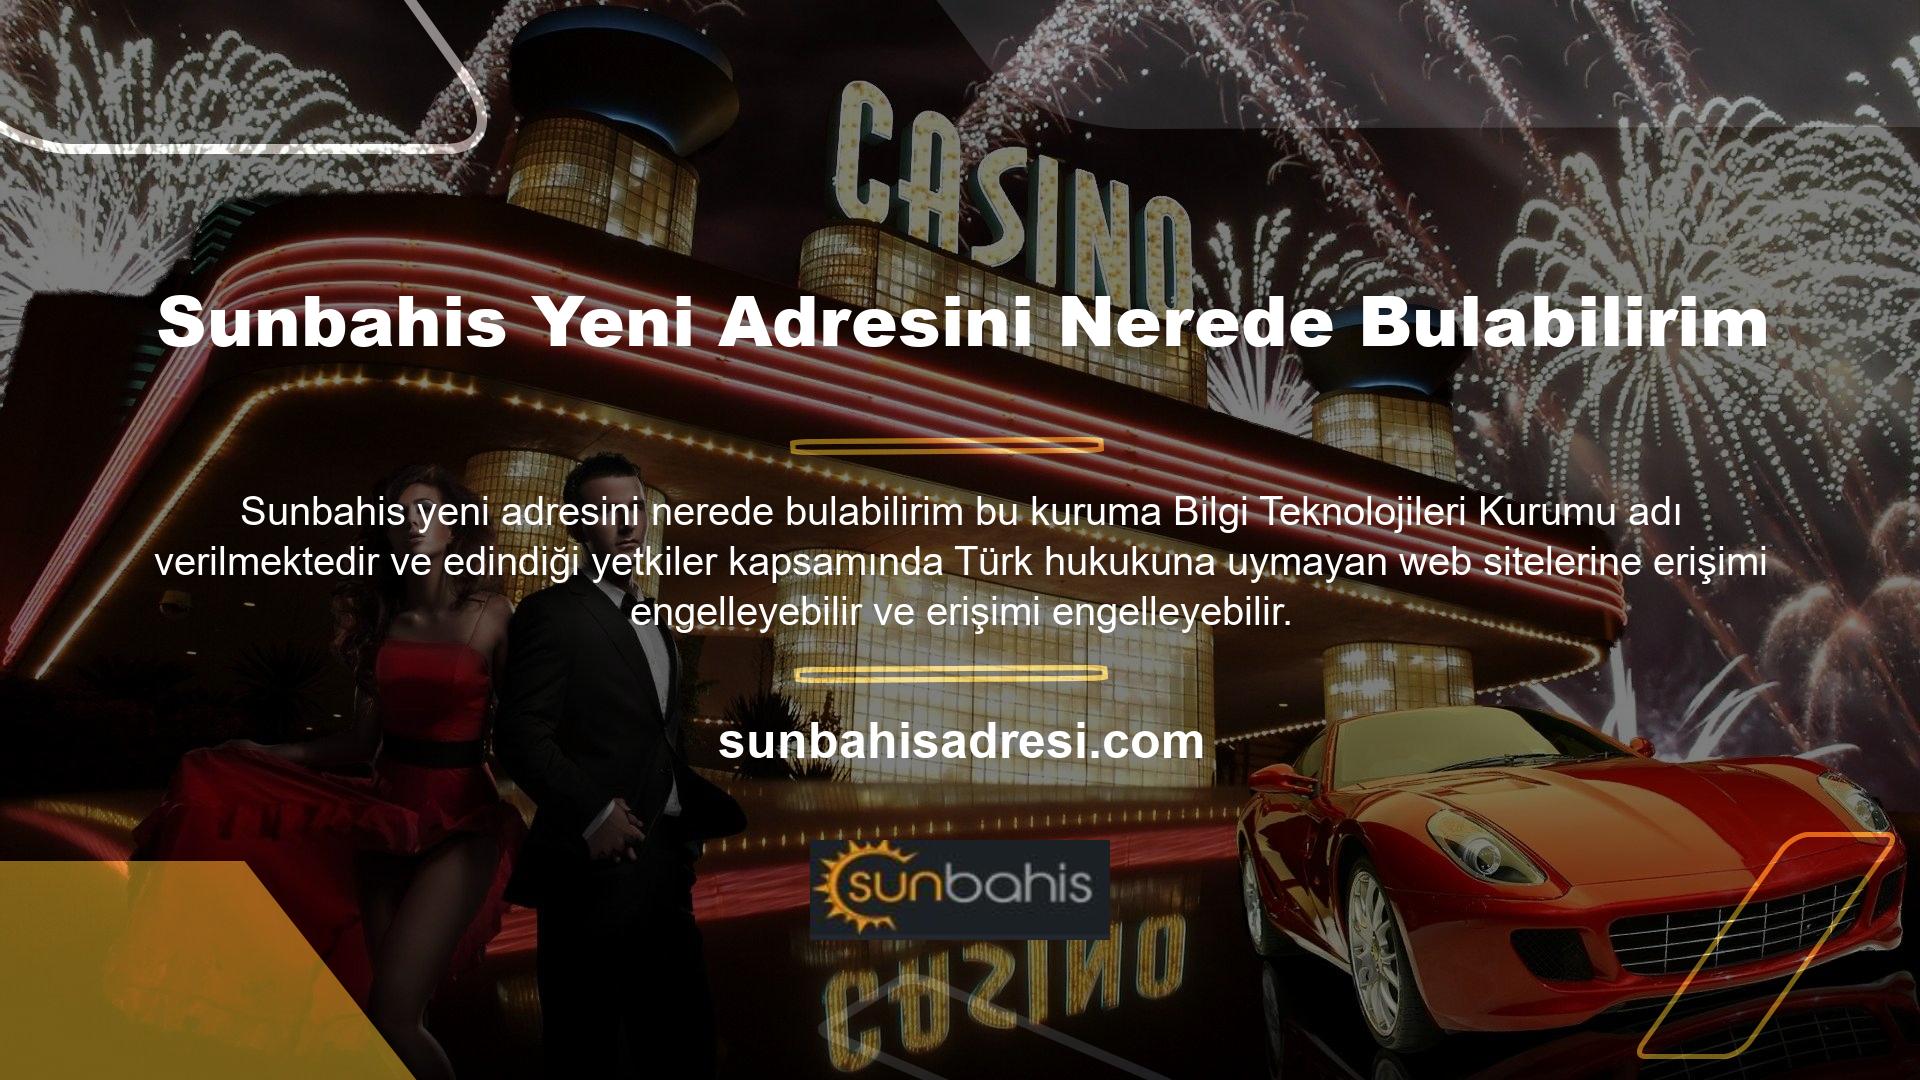 Türk yasalarına uymayan web sitelerine benzer engellemeler casino siteleri için de geçerli olacaktır